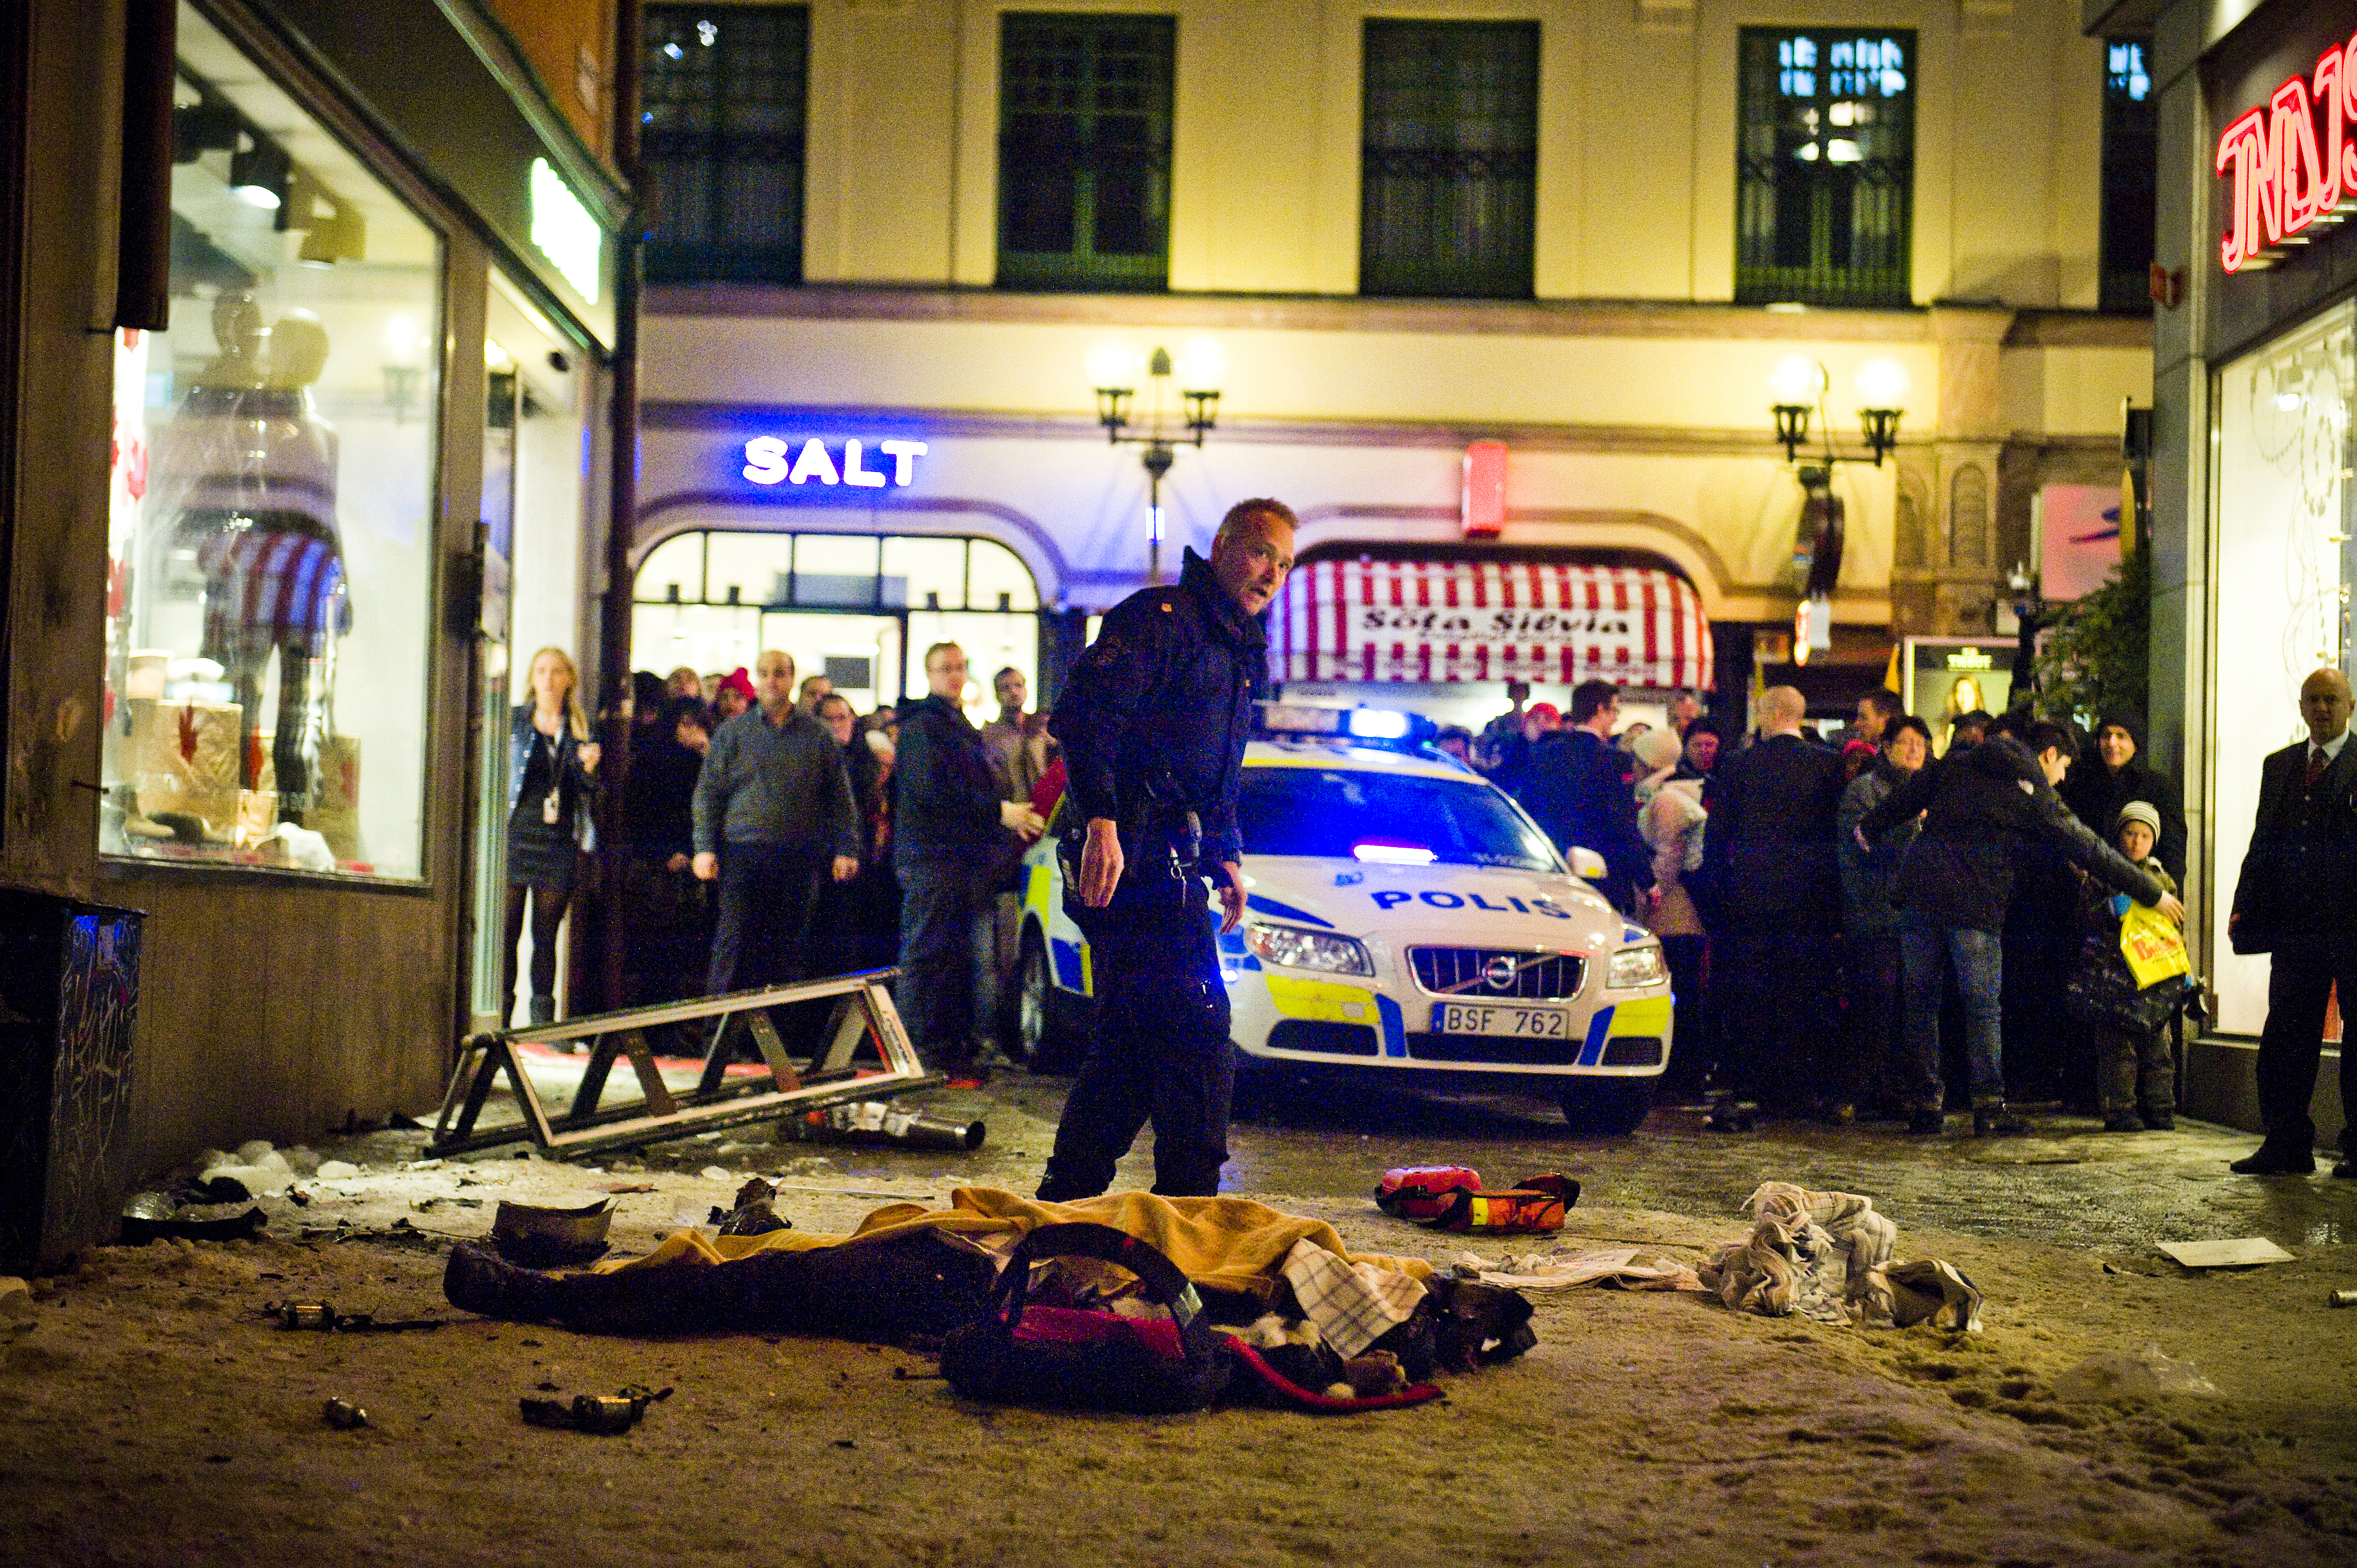 Omkring 17.00 den 11 december 2010 sprängde Abdulwahab sig själv på Bryggargatan.